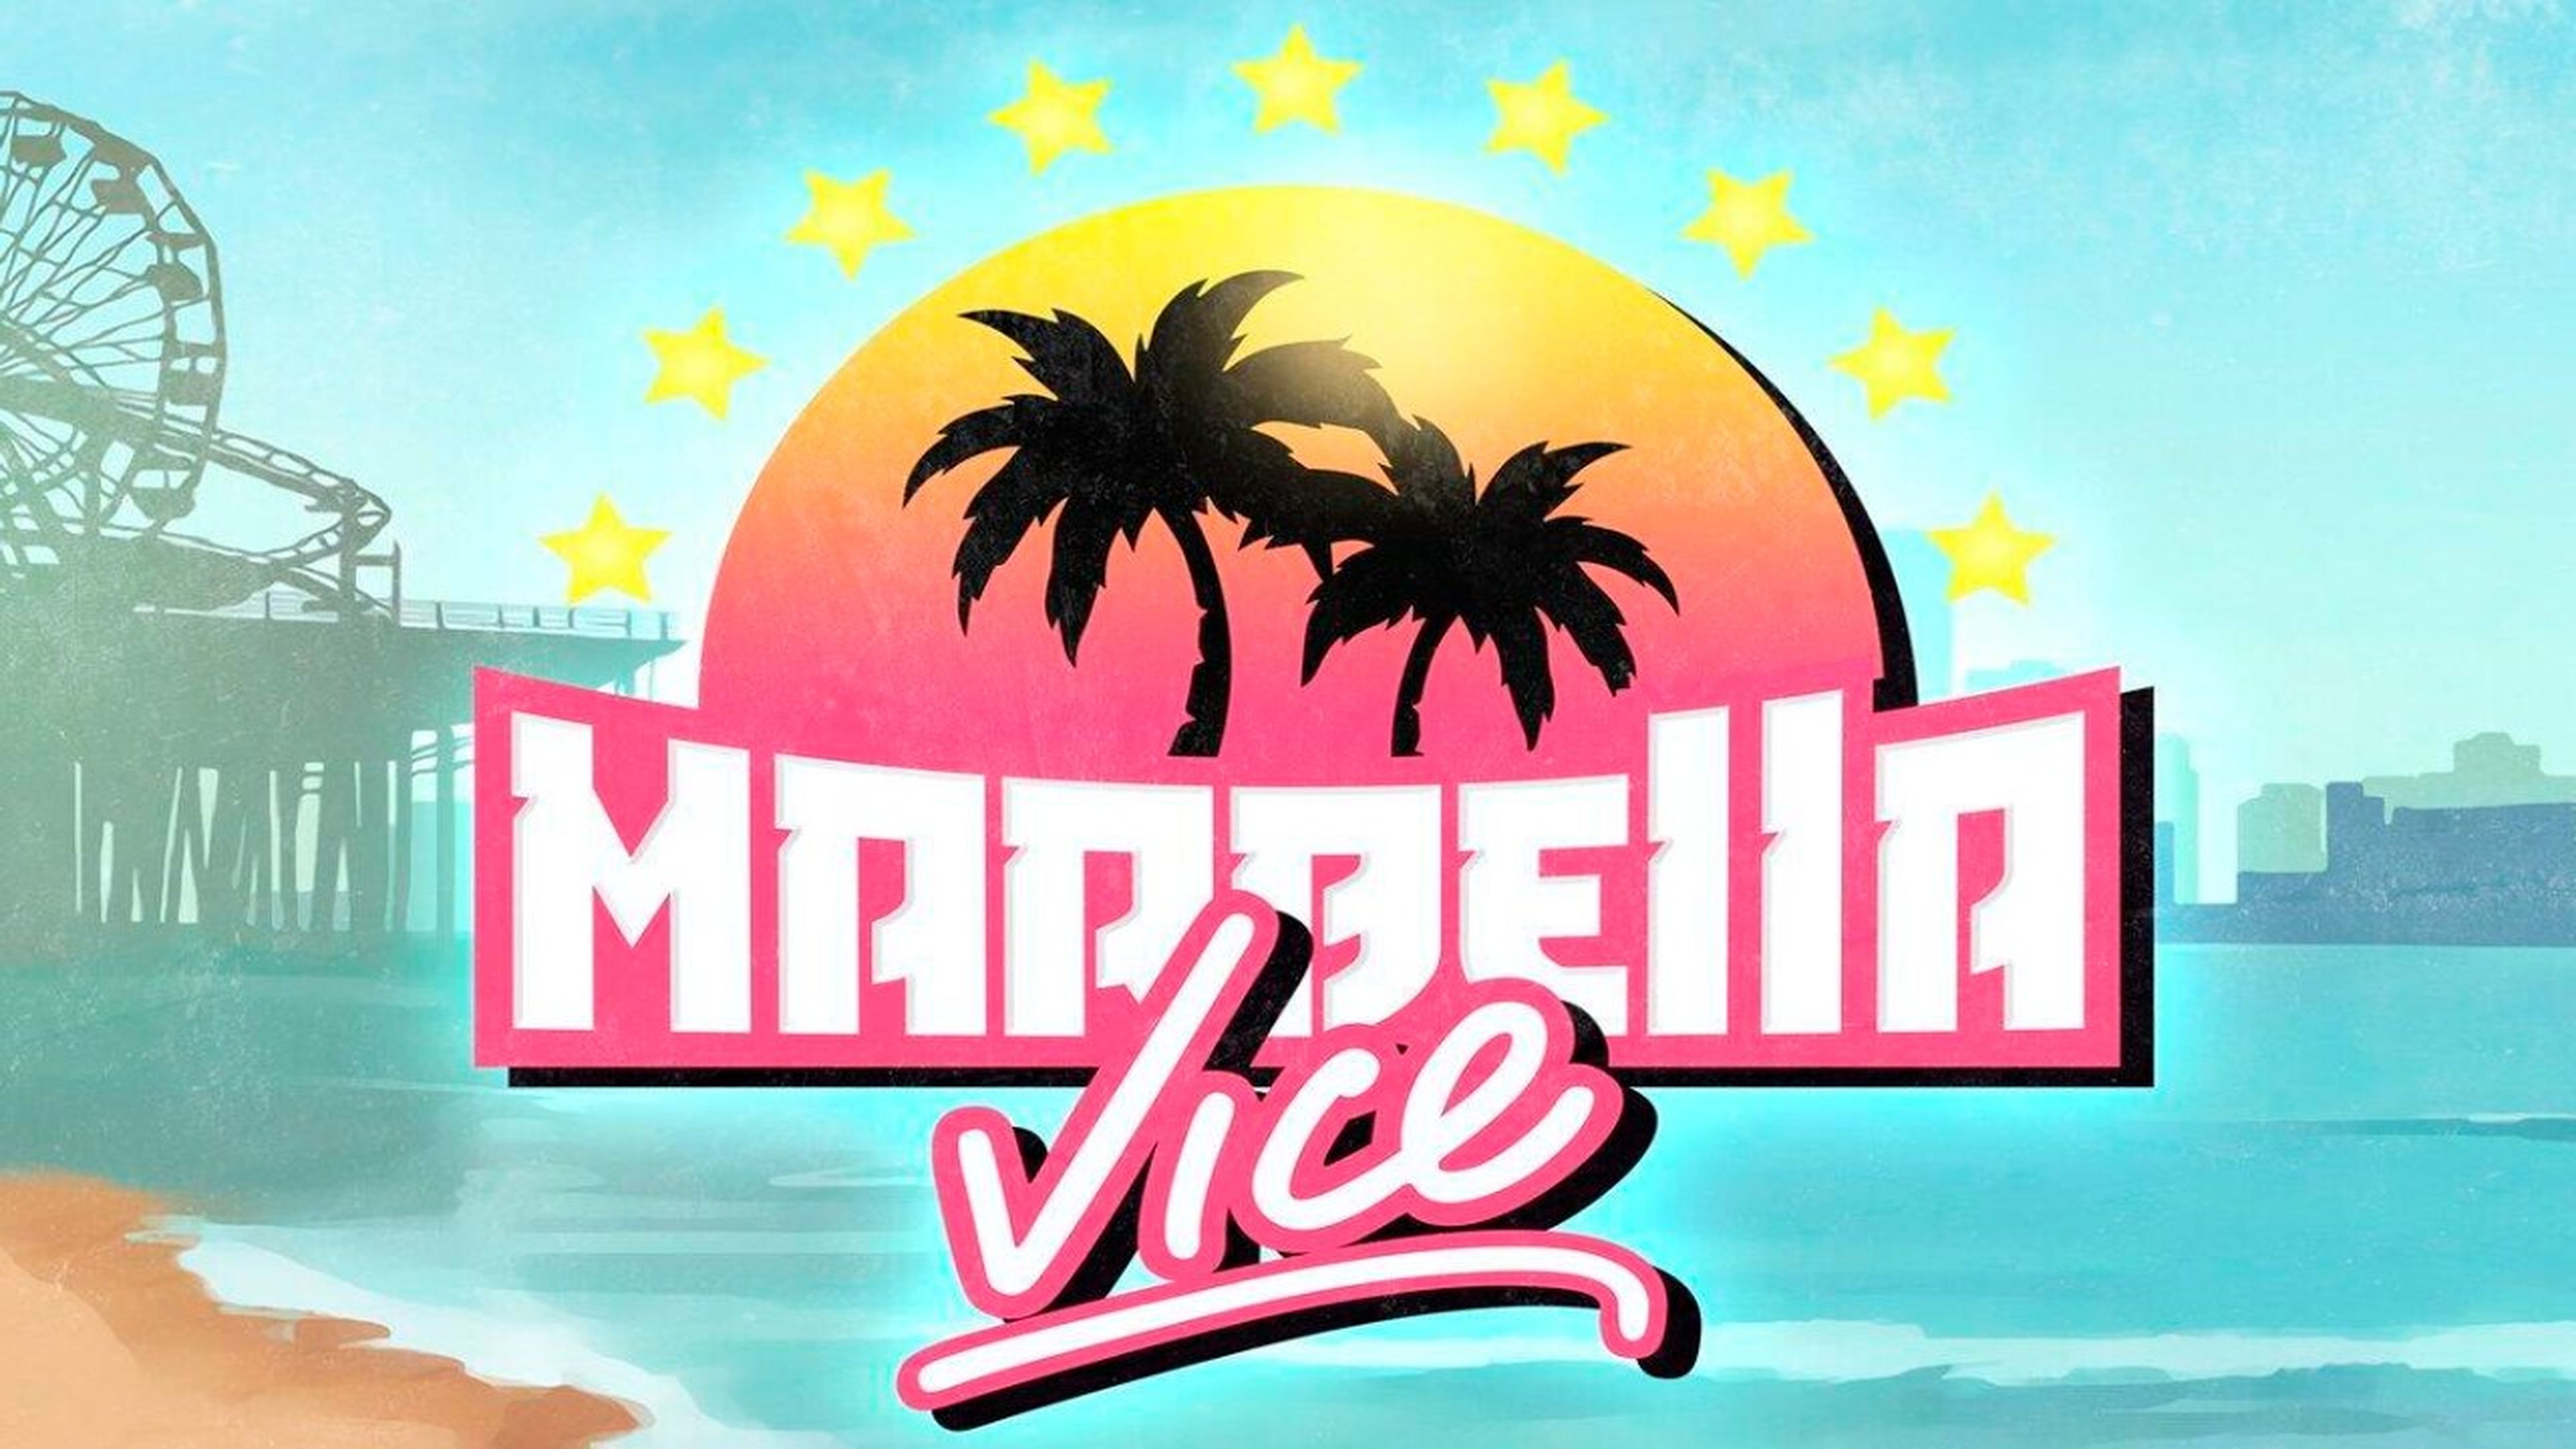 Marbella Vice